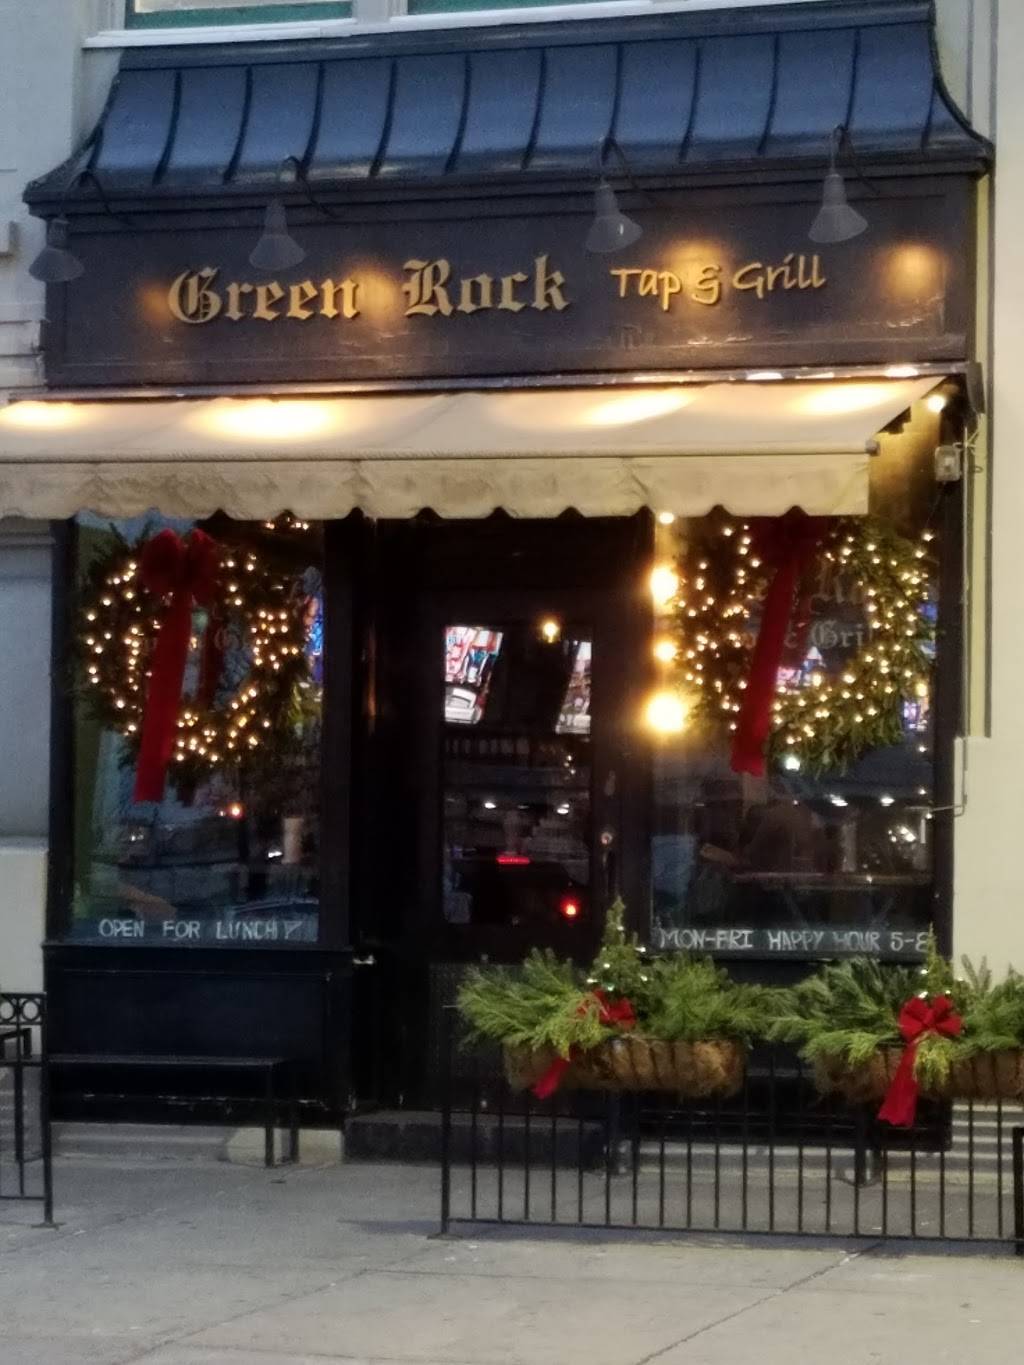 Green Rock Tap & Grill | restaurant | 70 Hudson St, Hoboken, NJ 07030, USA | 2013865600 OR +1 201-386-5600